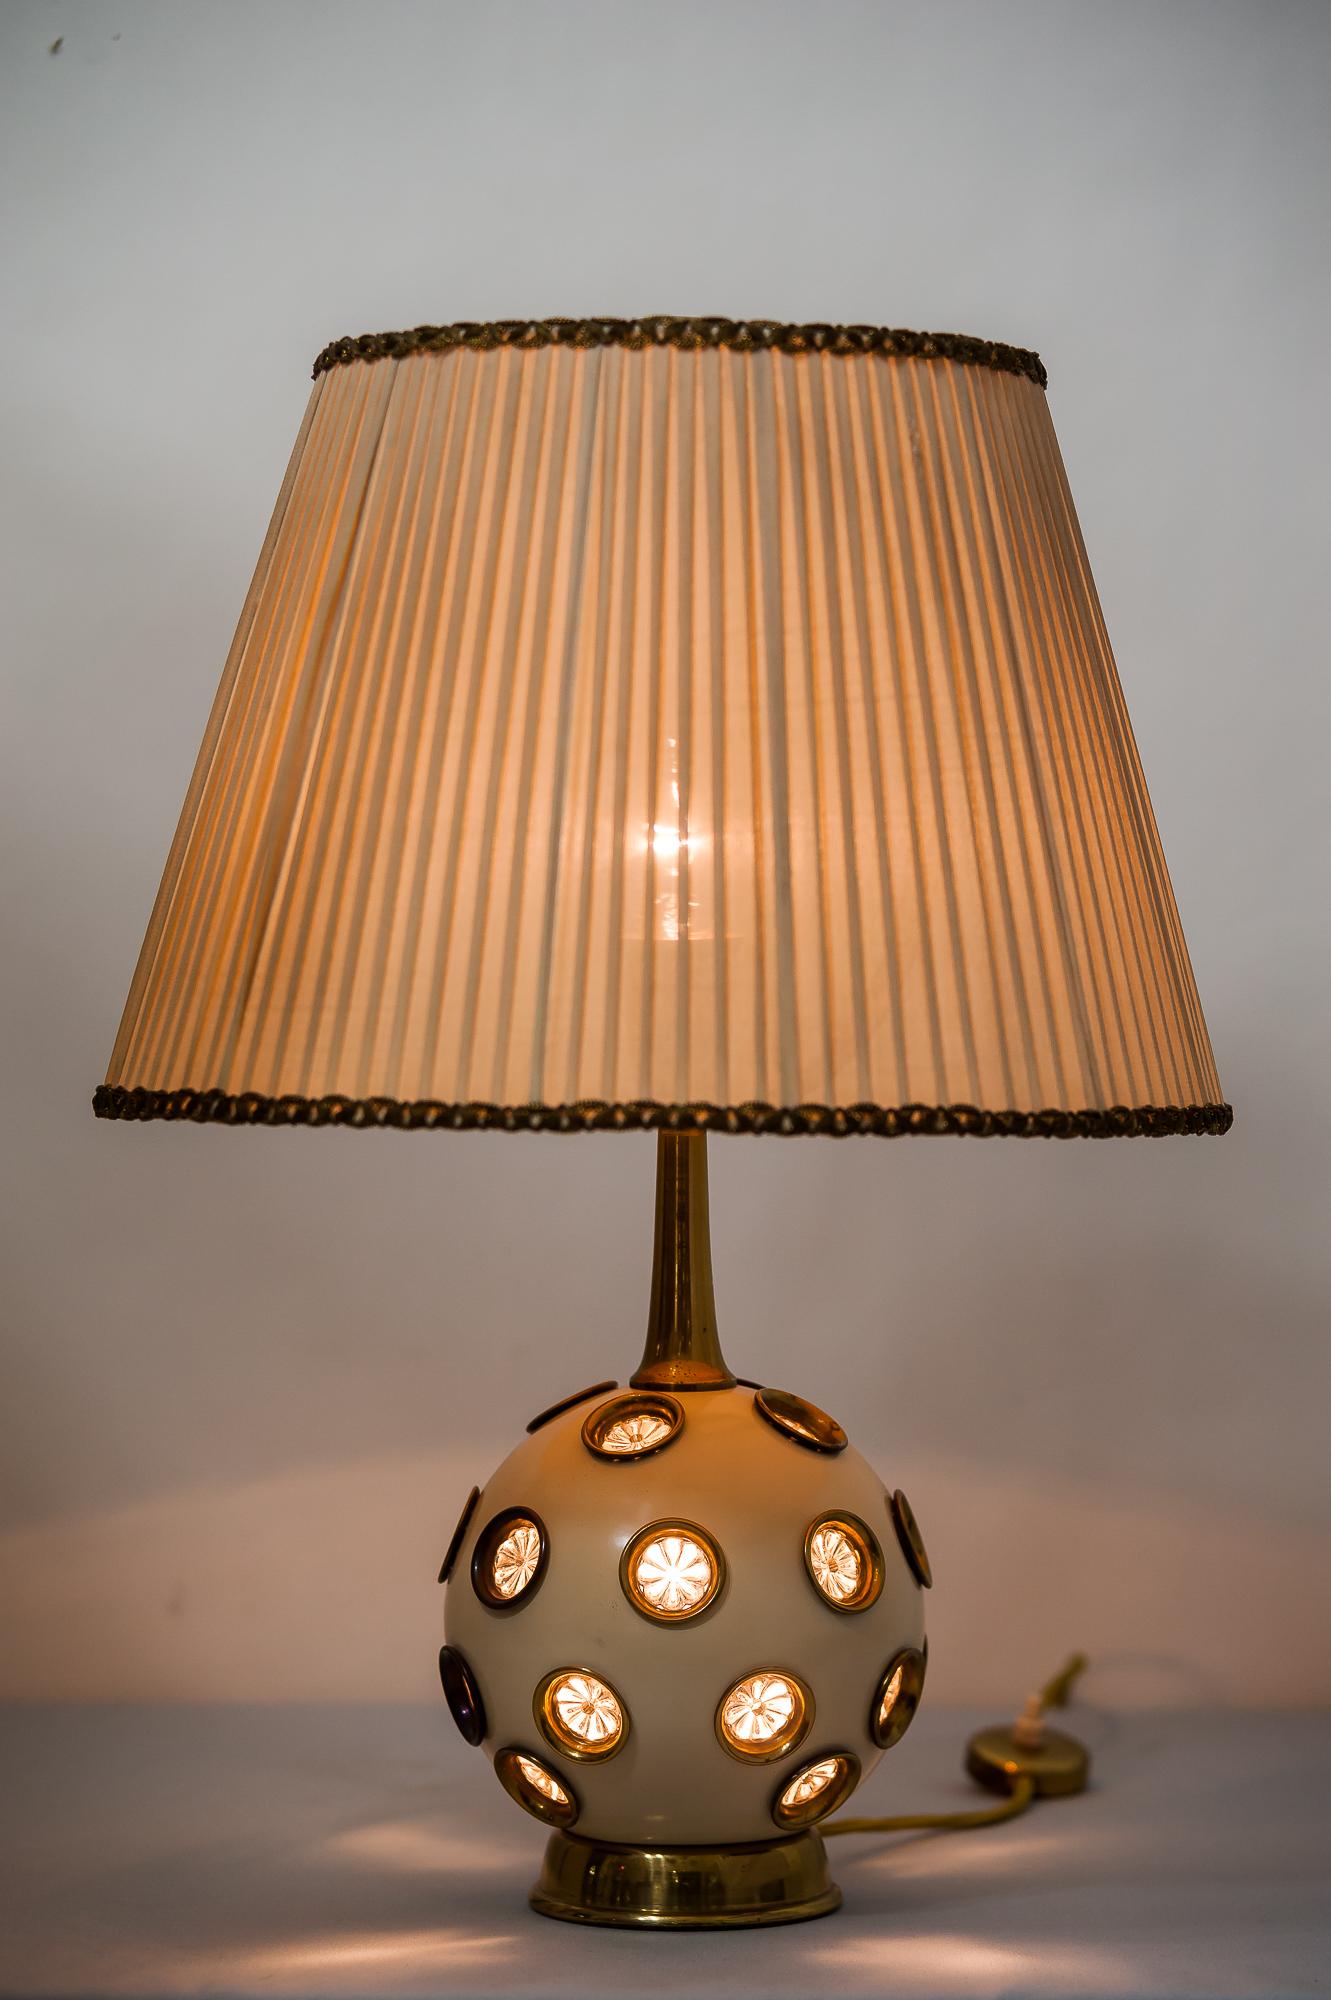 Rare Rupert Nikoll table lamp, circa 1950s.
Original condition
Original shade.